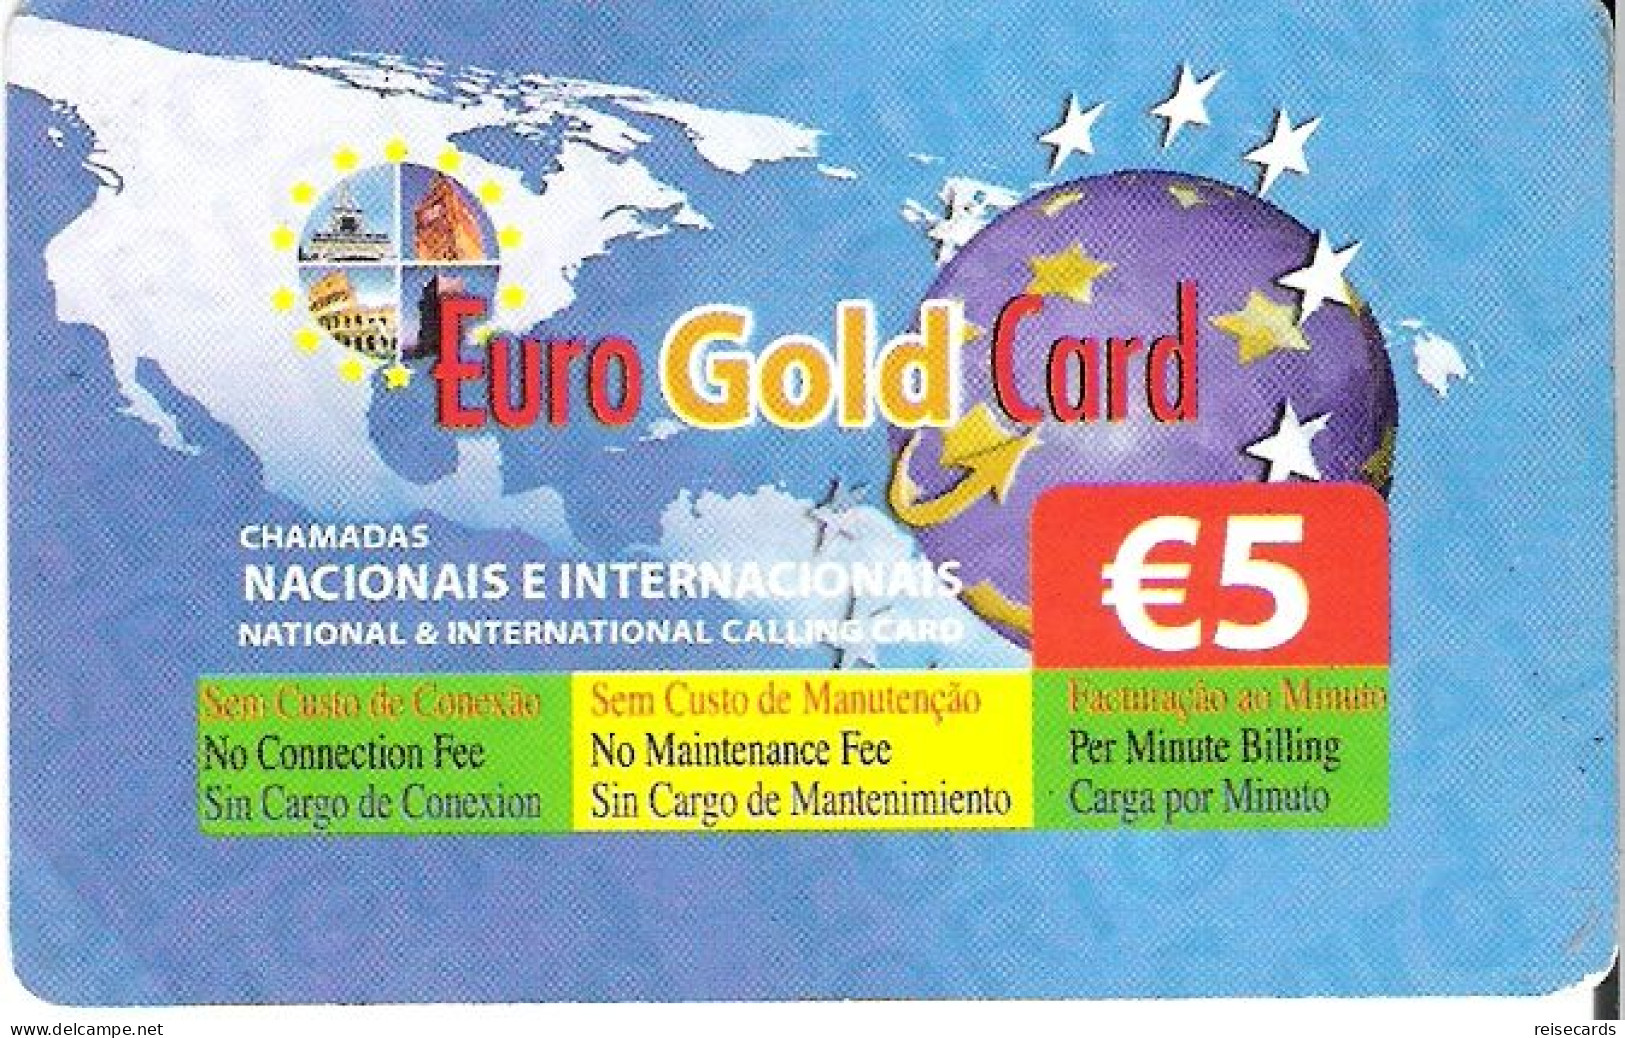 Portugal: Prepaid Novis - Euro Gold Card - Poland